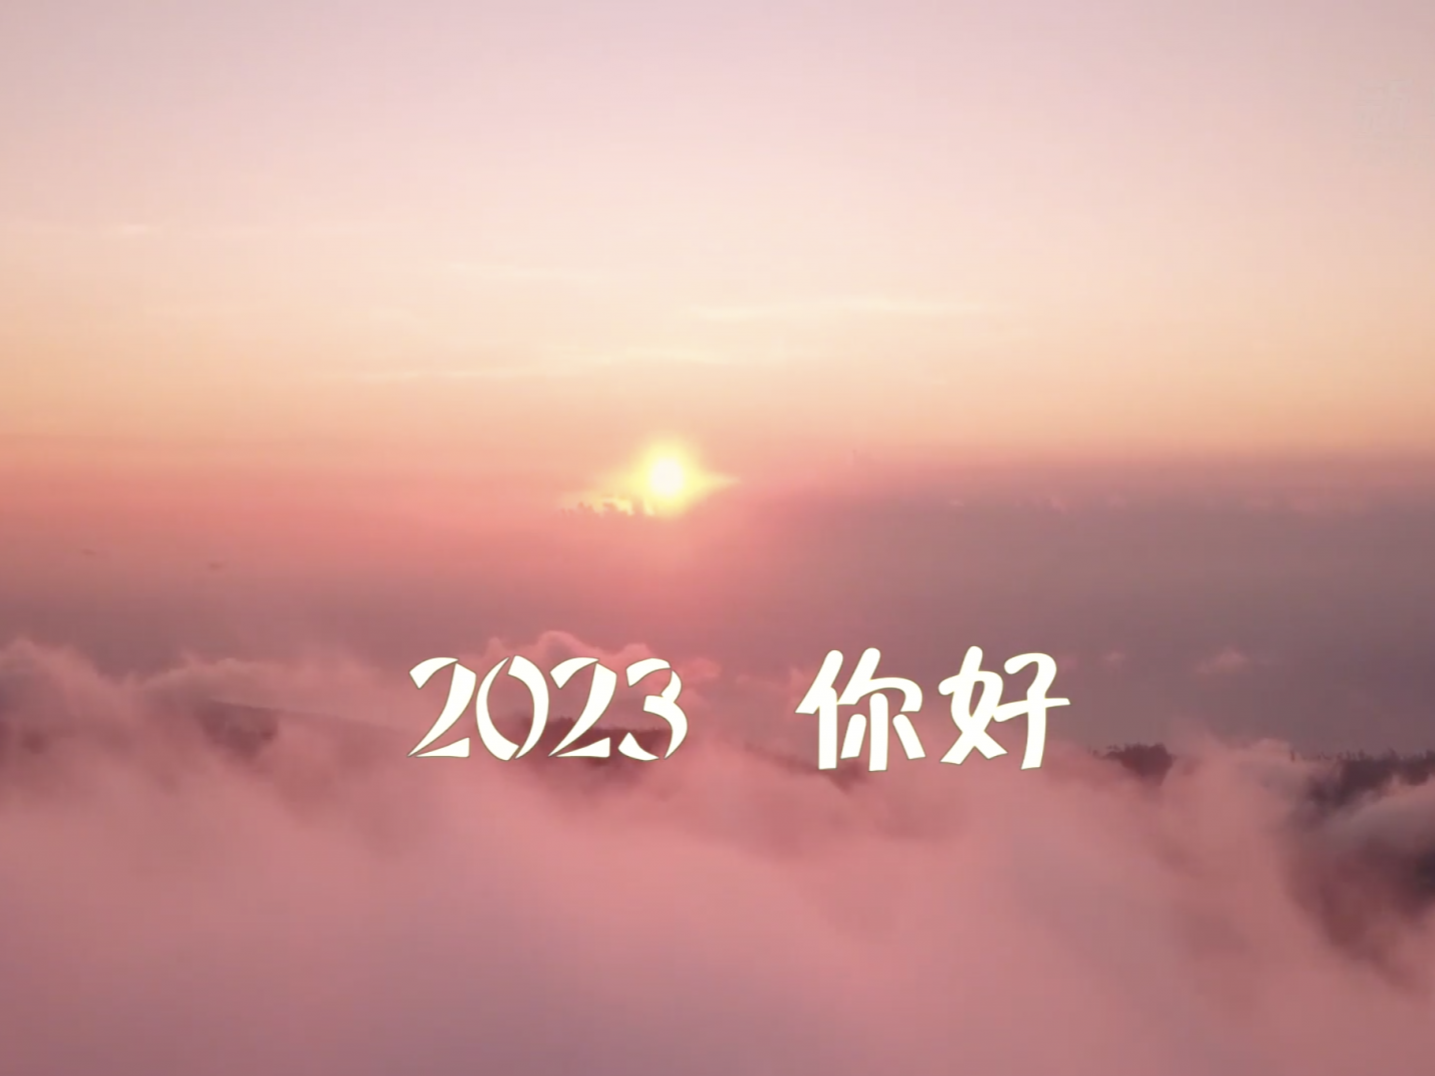 聆听新年贺词 逐梦2023